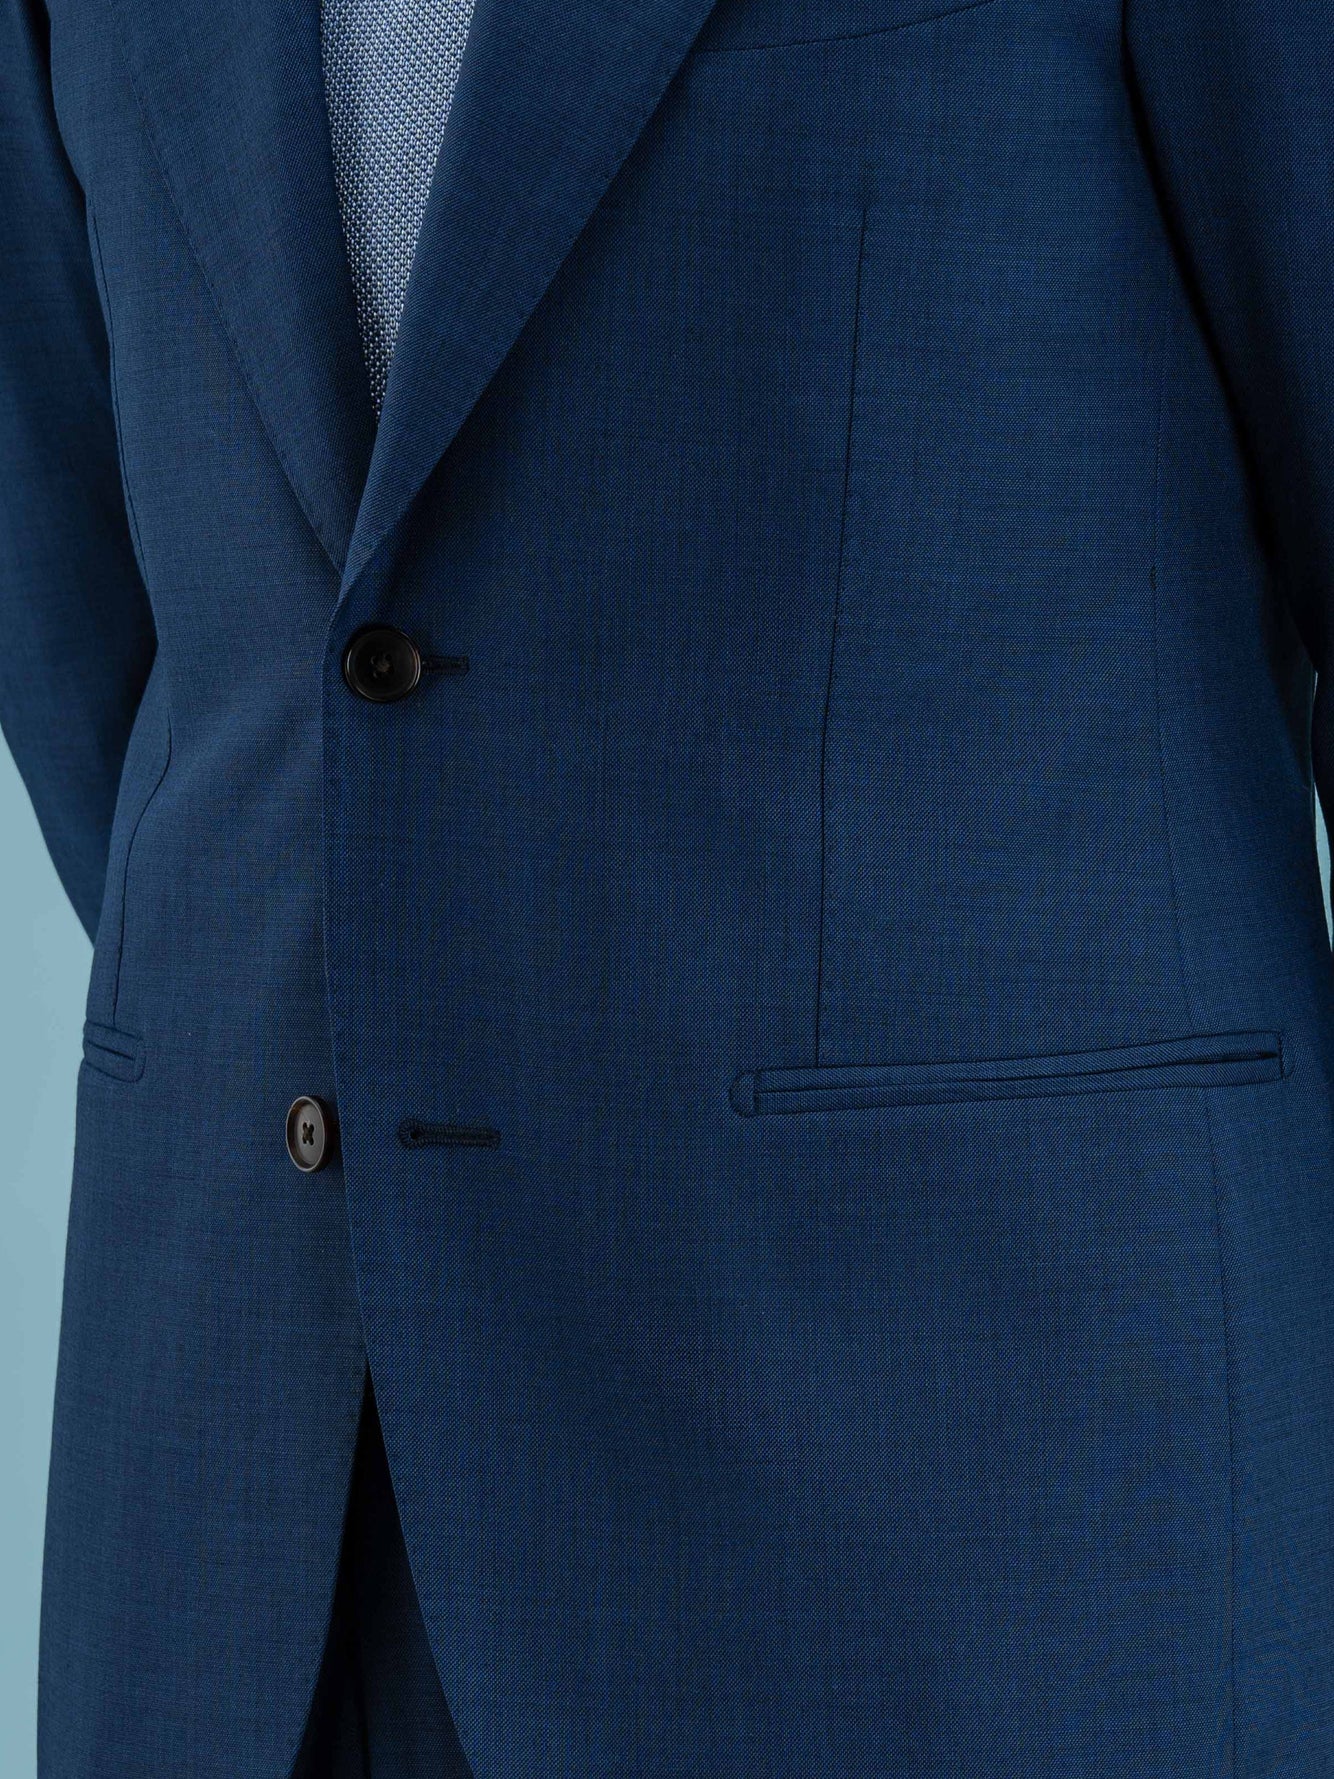 Blue Milano Suit - Grand Le Mar